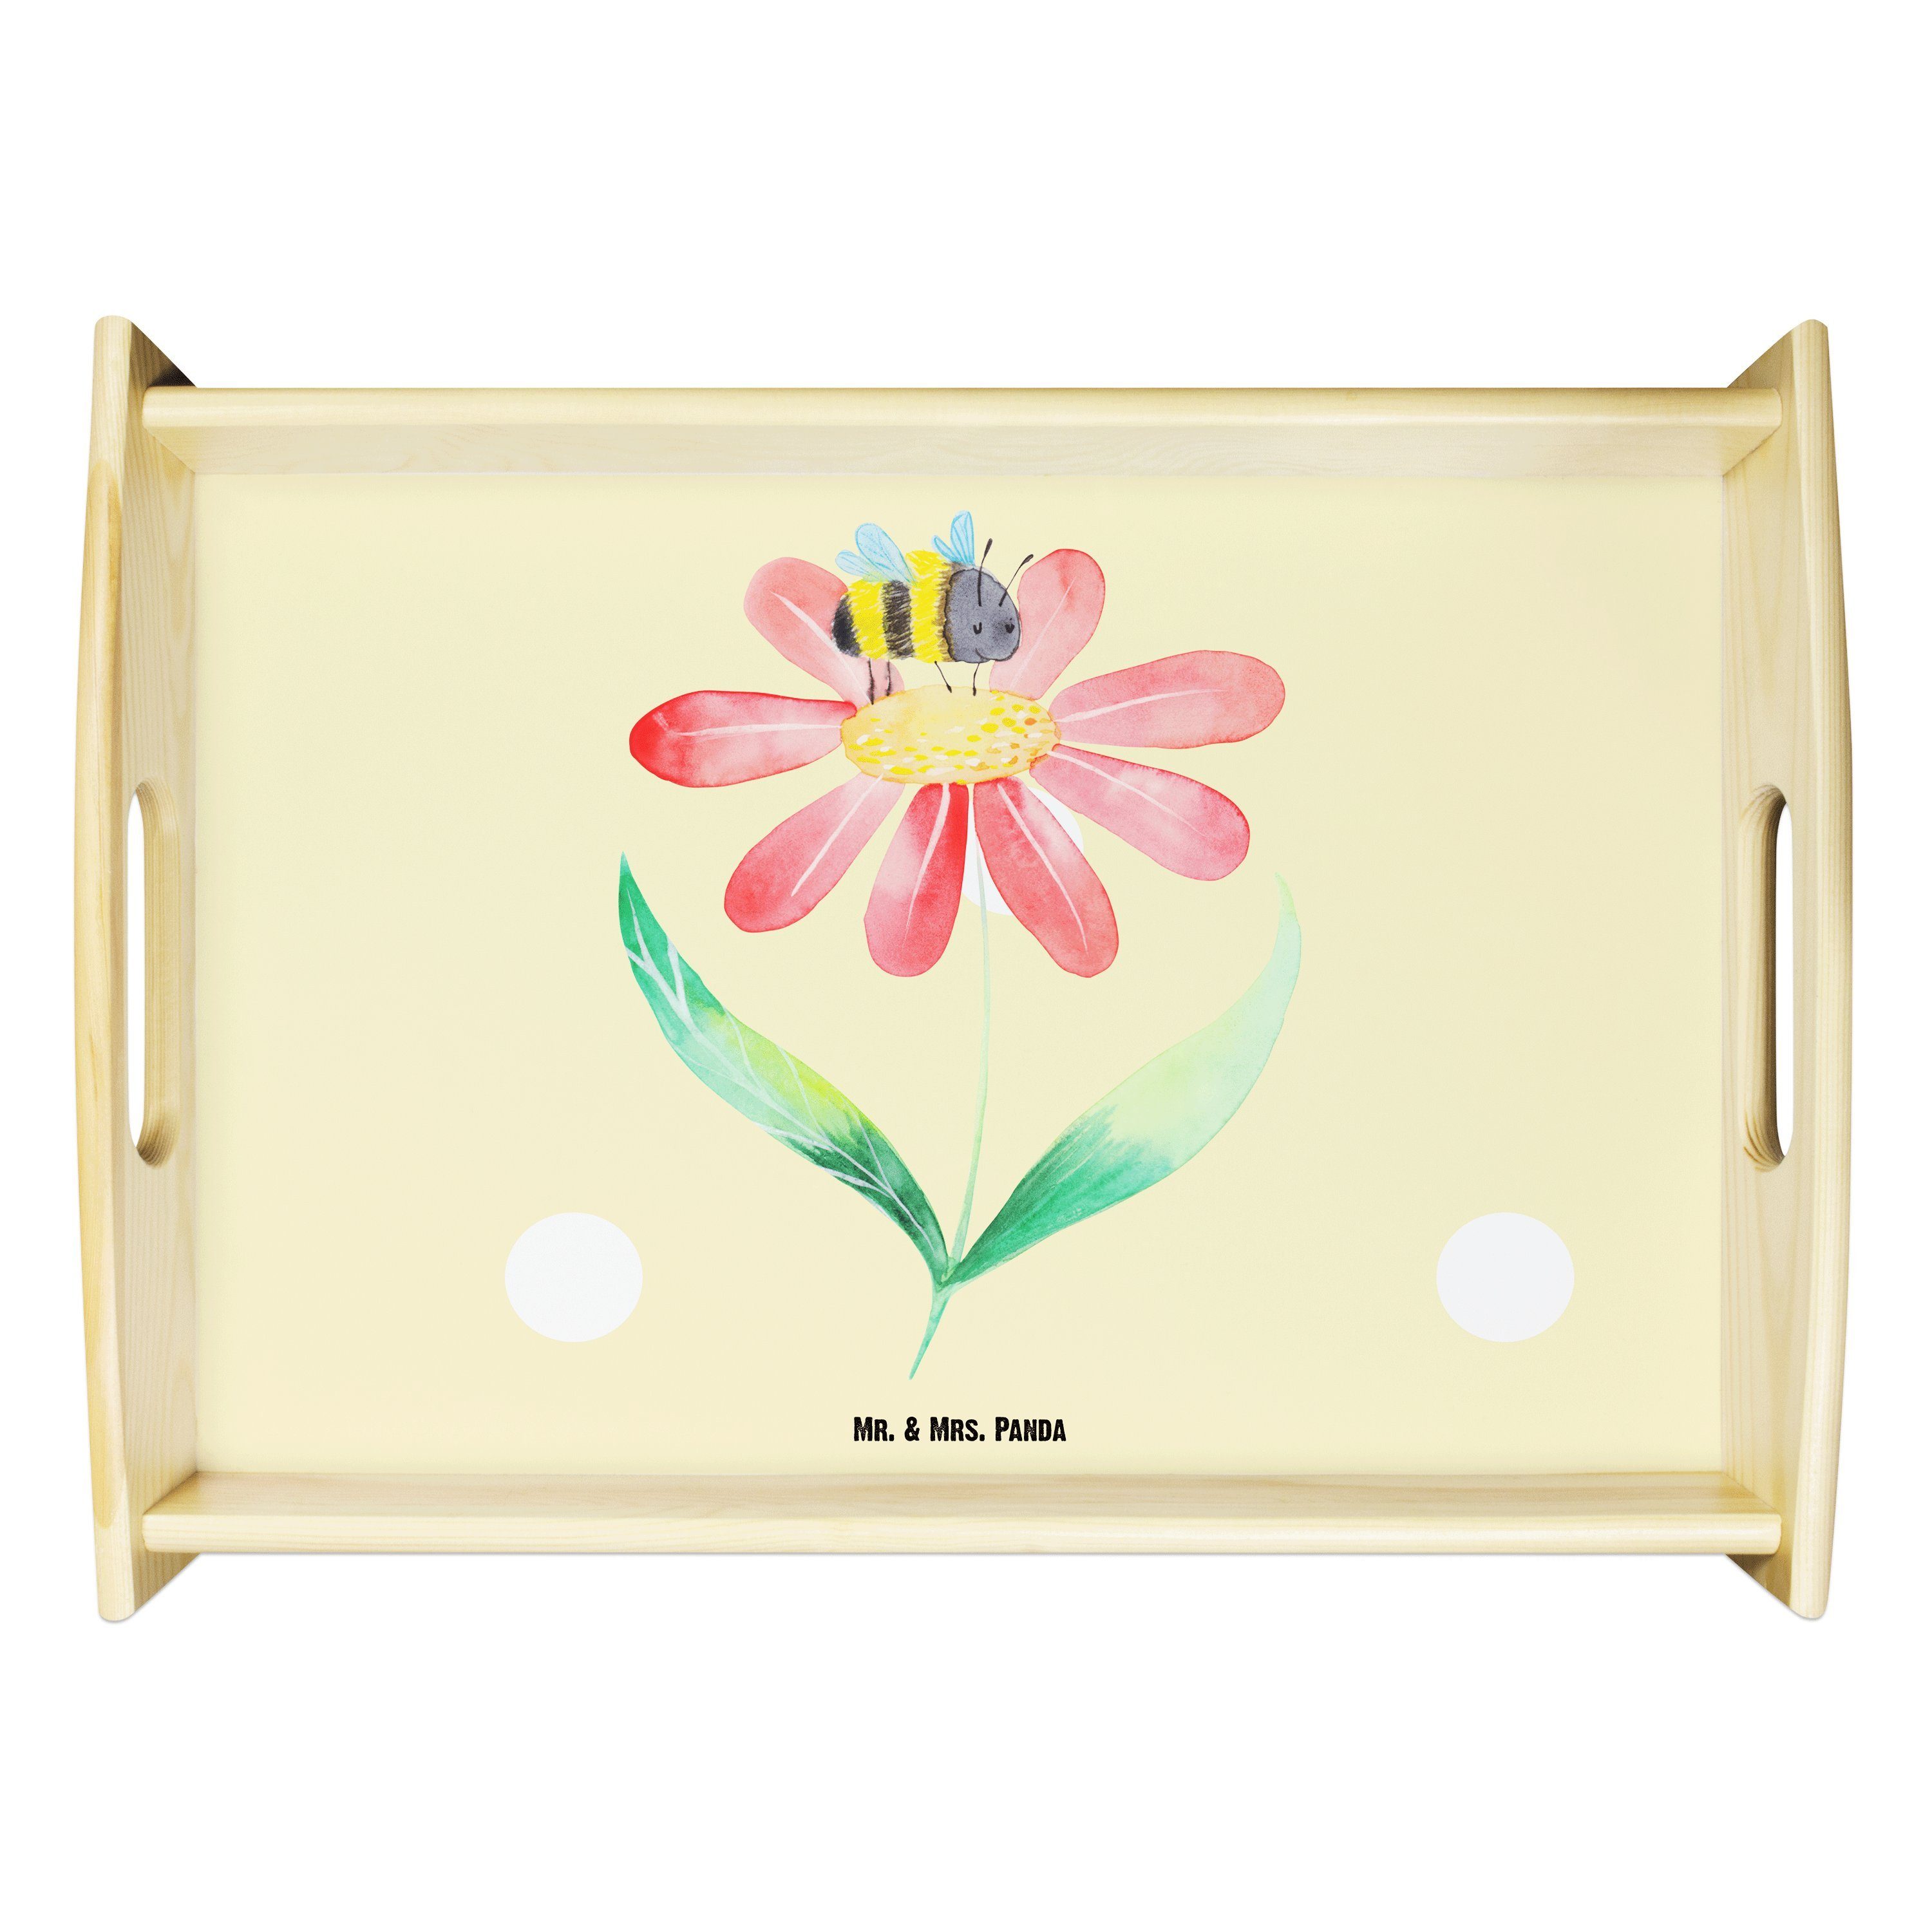 Mr. & Mrs. Panda Tablett Hummel Blume - Gelb Pastell - Geschenk, lustige Sprüche, Tiermotive, Echtholz lasiert, (1-tlg)